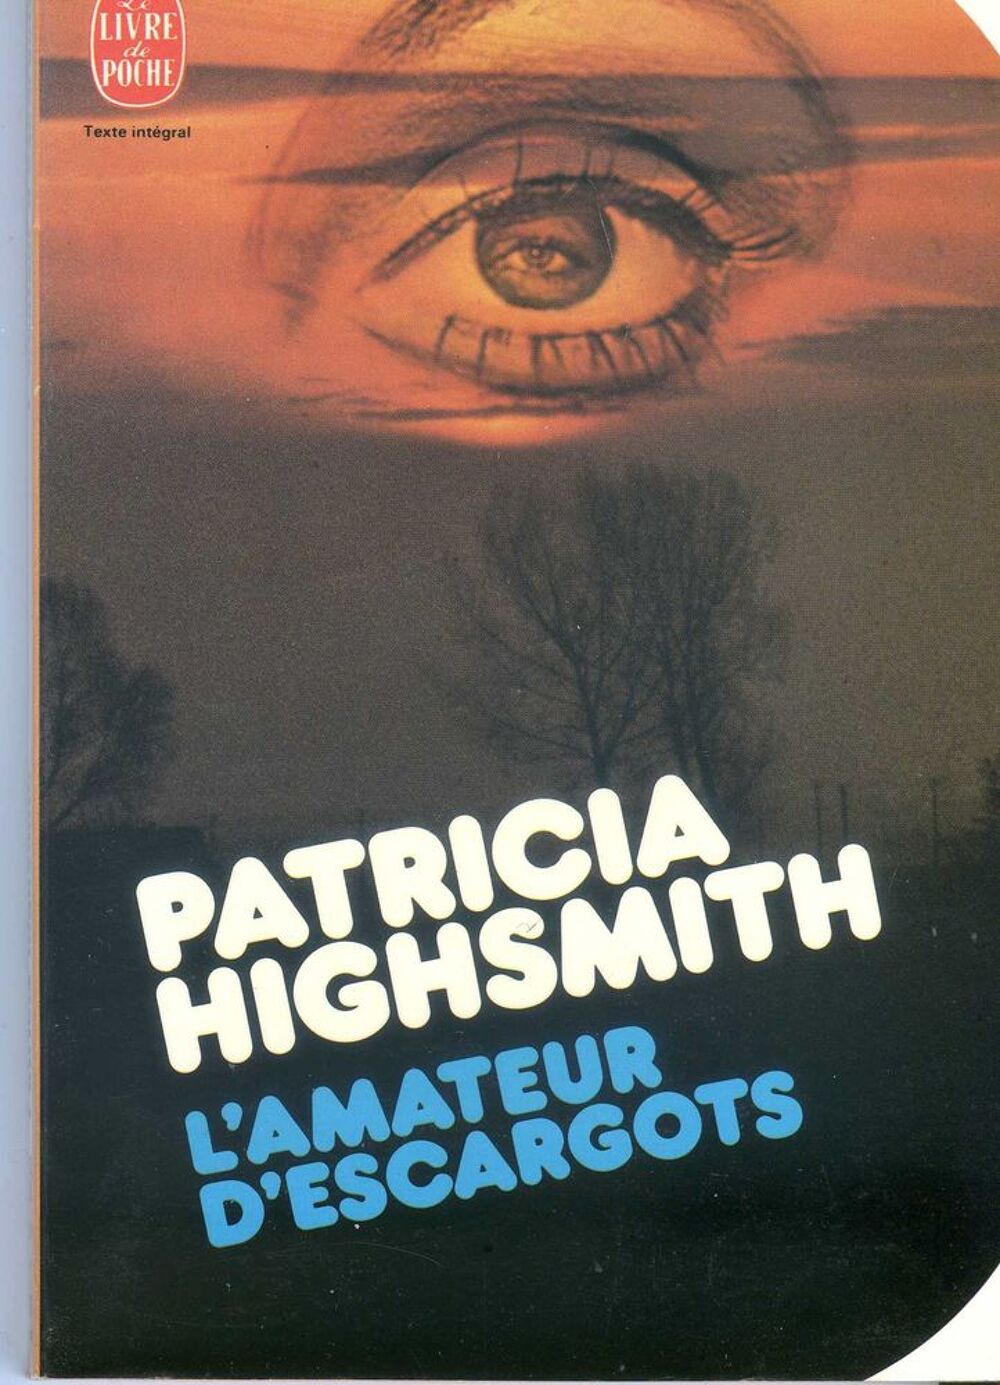 L'amateur d'escargot - Patricia Highsmith, Livres et BD